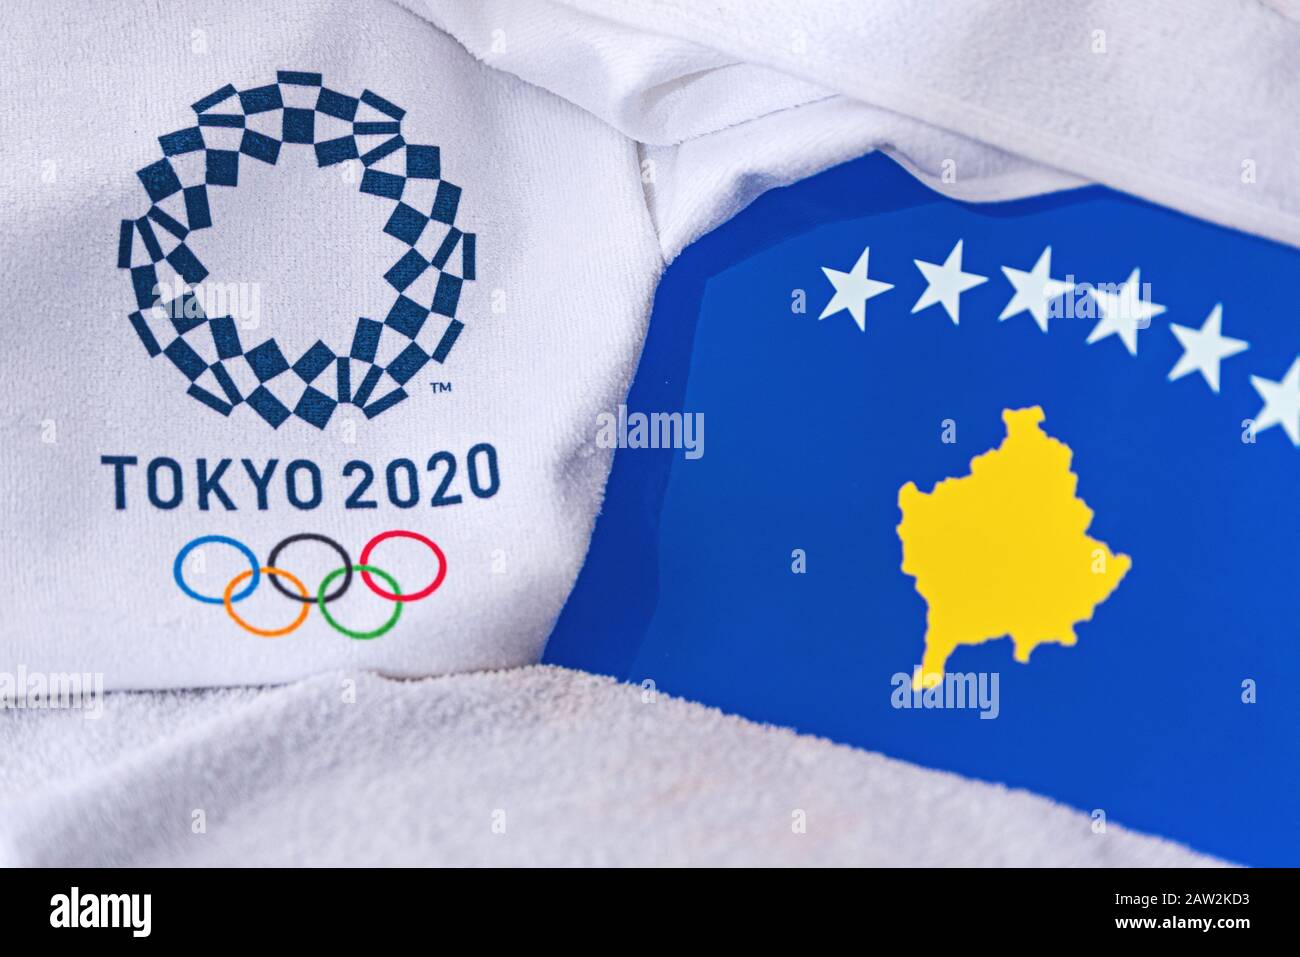 TOKYO, JAPON, FÉVRIER. 4, 2020: Drapeau national du Kosovo, logo officiel des Jeux olympiques d'été à Tokyo 2020. Fond blanc Banque D'Images